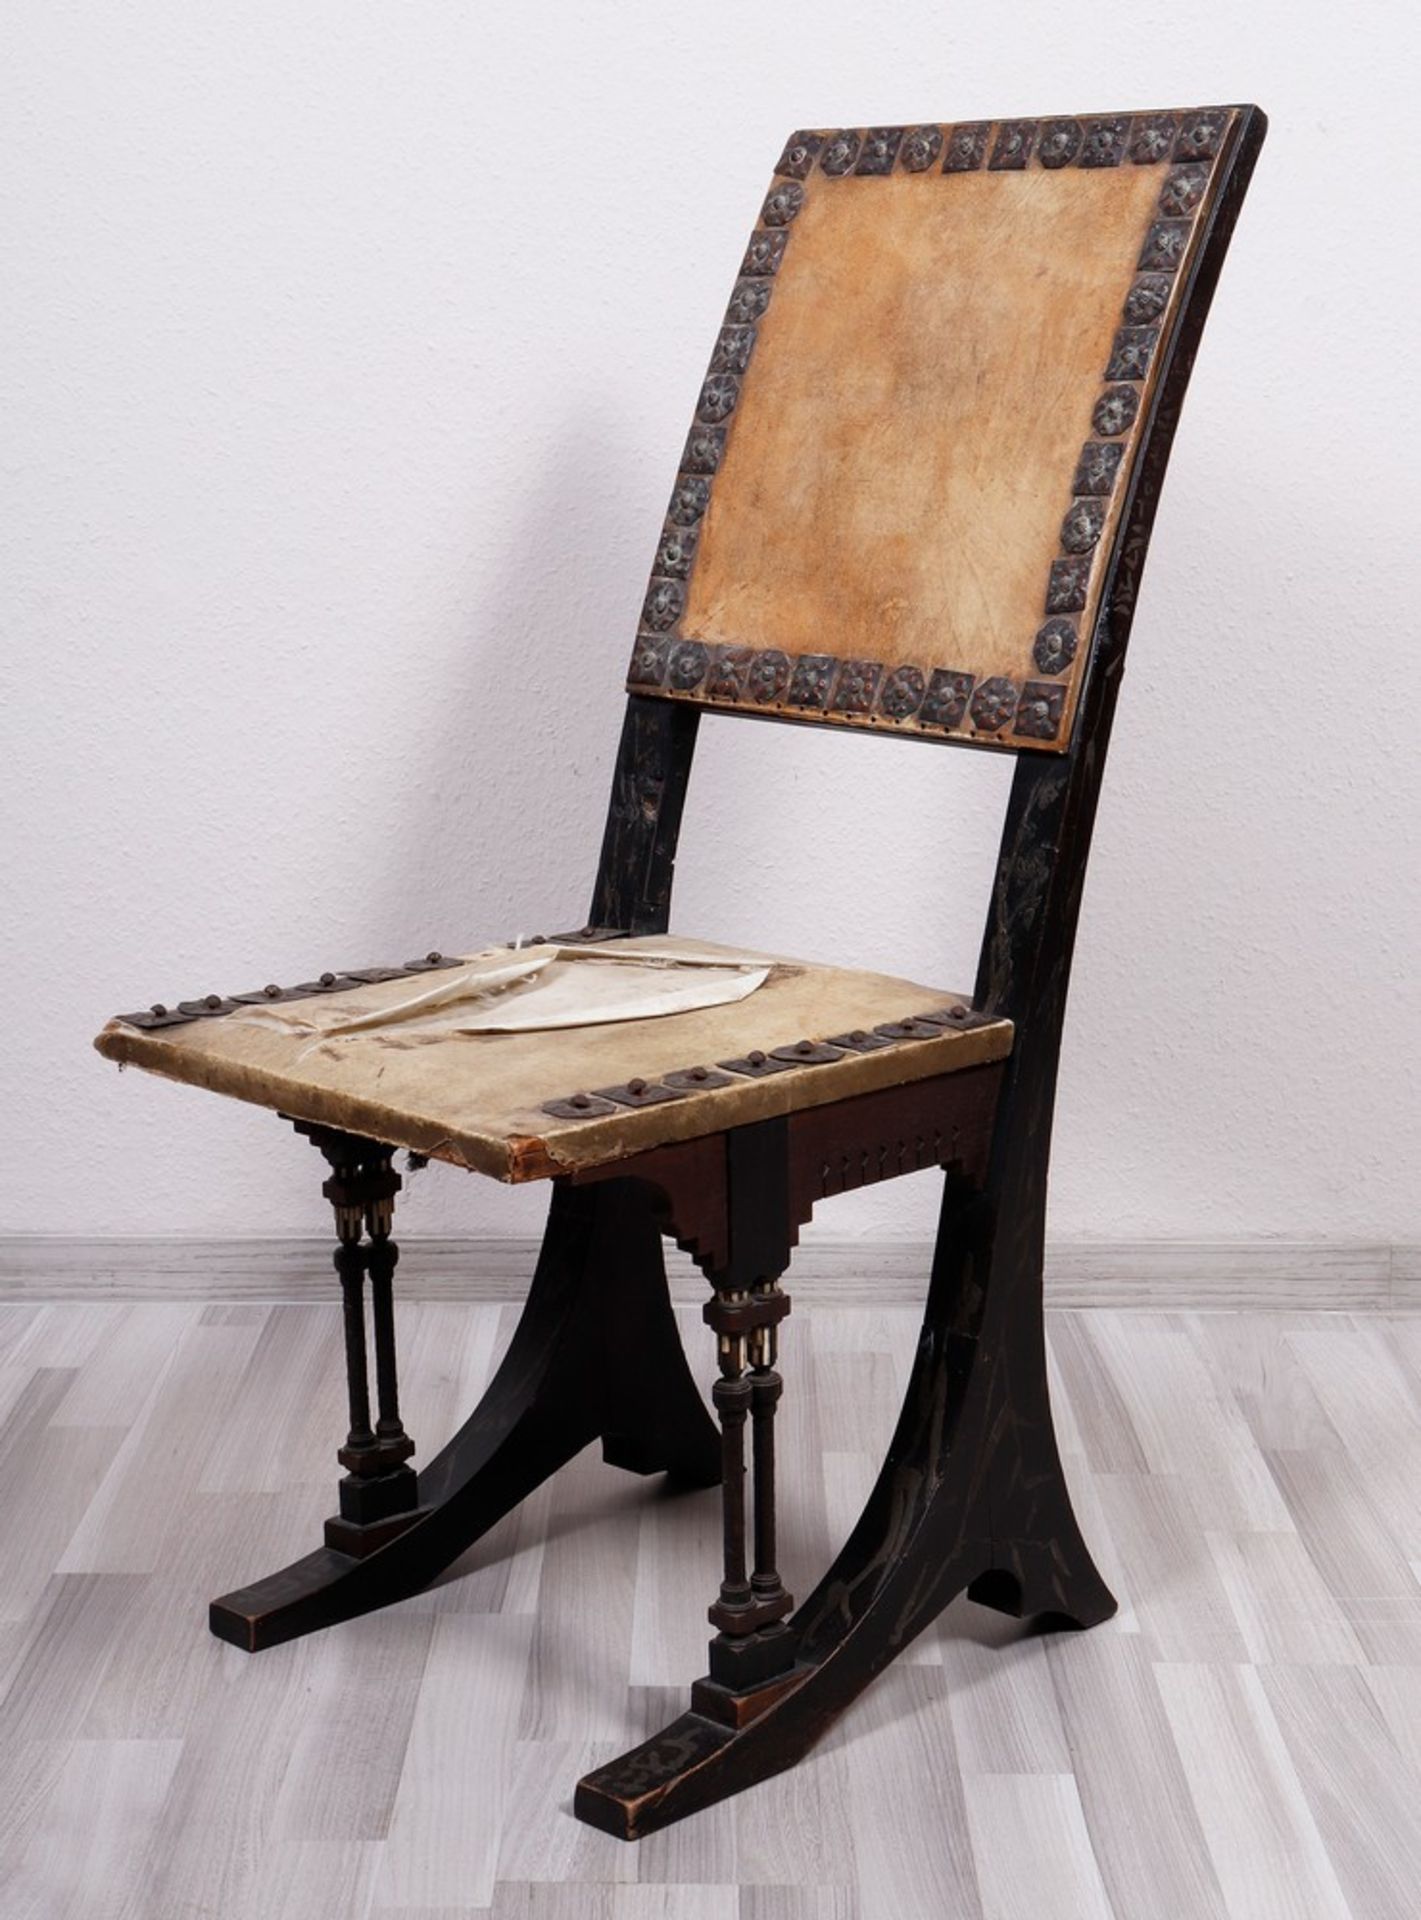 Carlo Bugatti (1856, Milan - 1940, Molsheim, Alsace), chair, c. 1890/1900